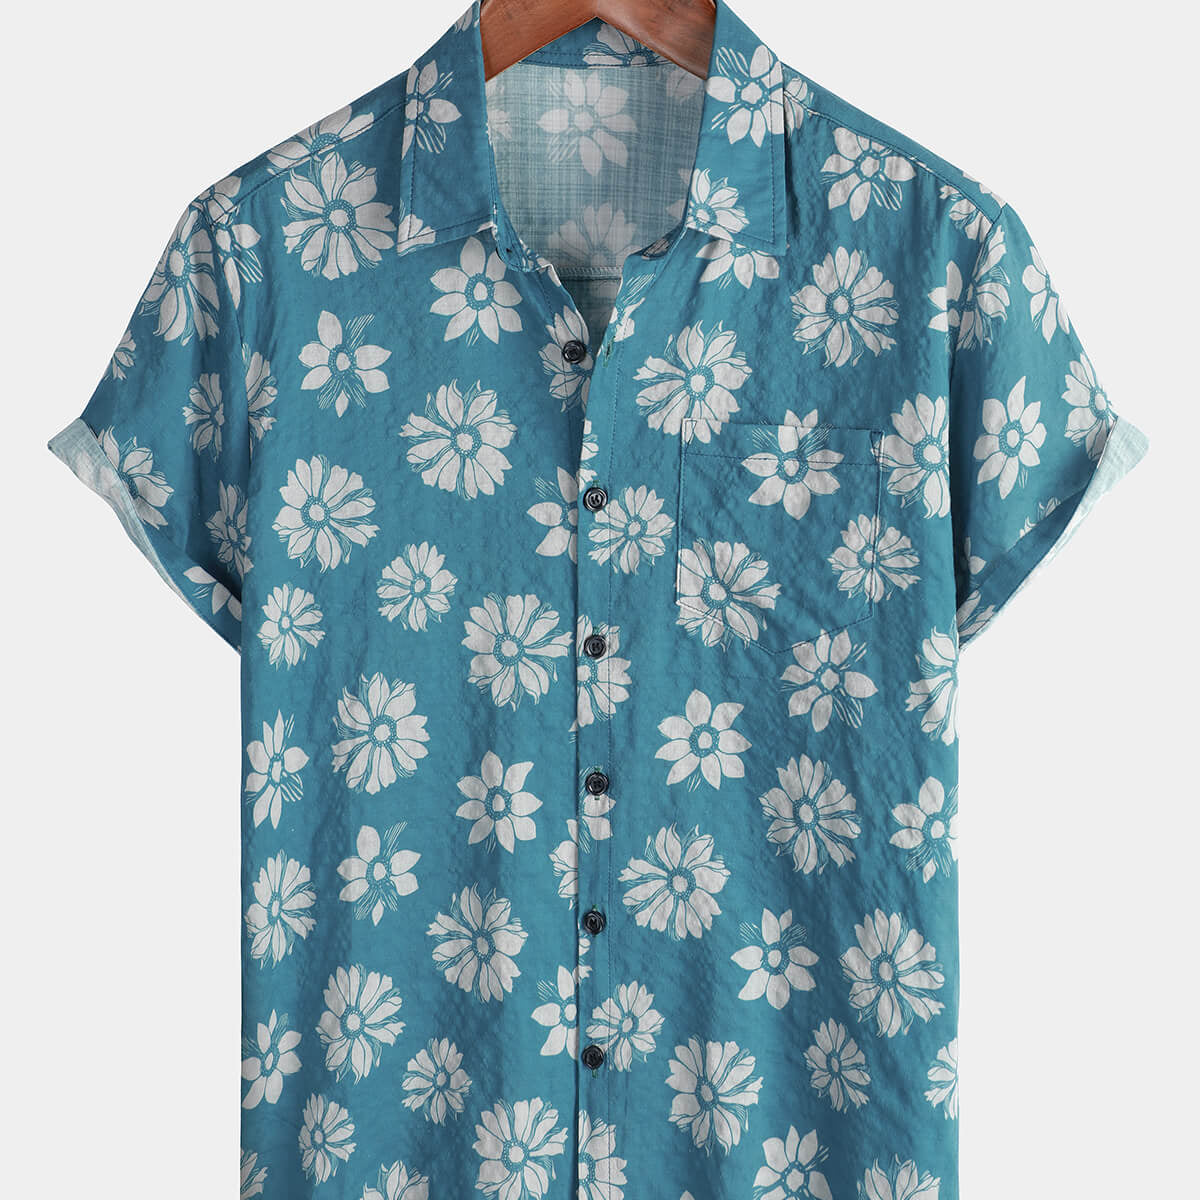 Men's Blue Floral Short Sleeve Summer Cotton Hawaiian Button Up Shirt